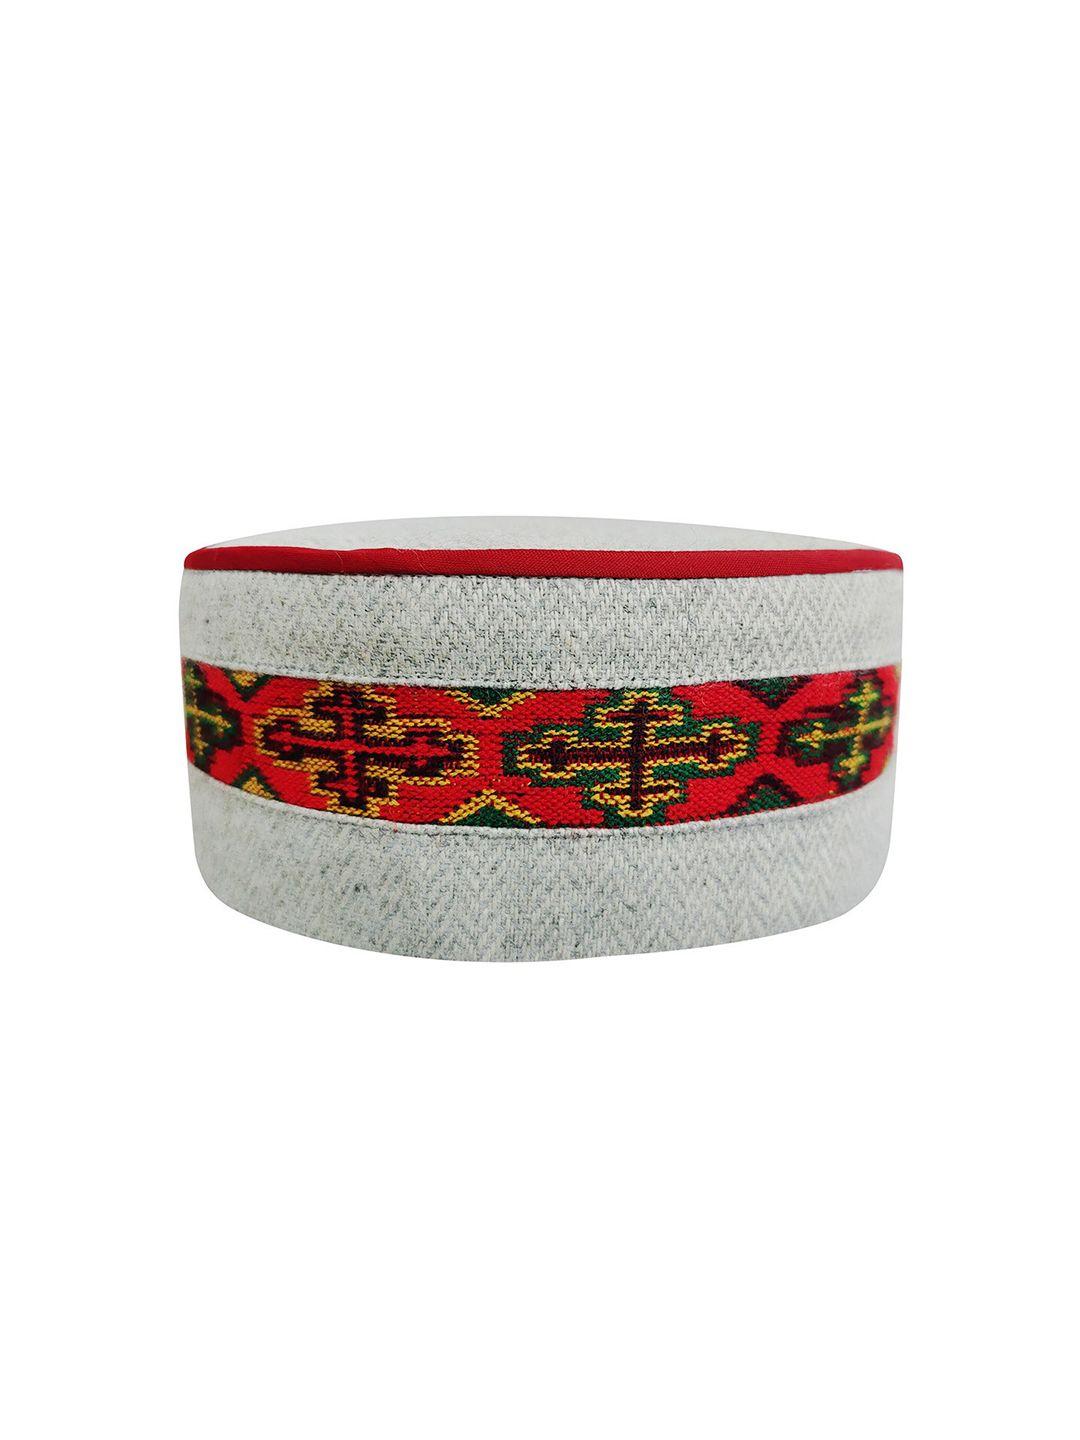 vastraa fusion unisex grey & red embroidered woolen kullu himachali cap